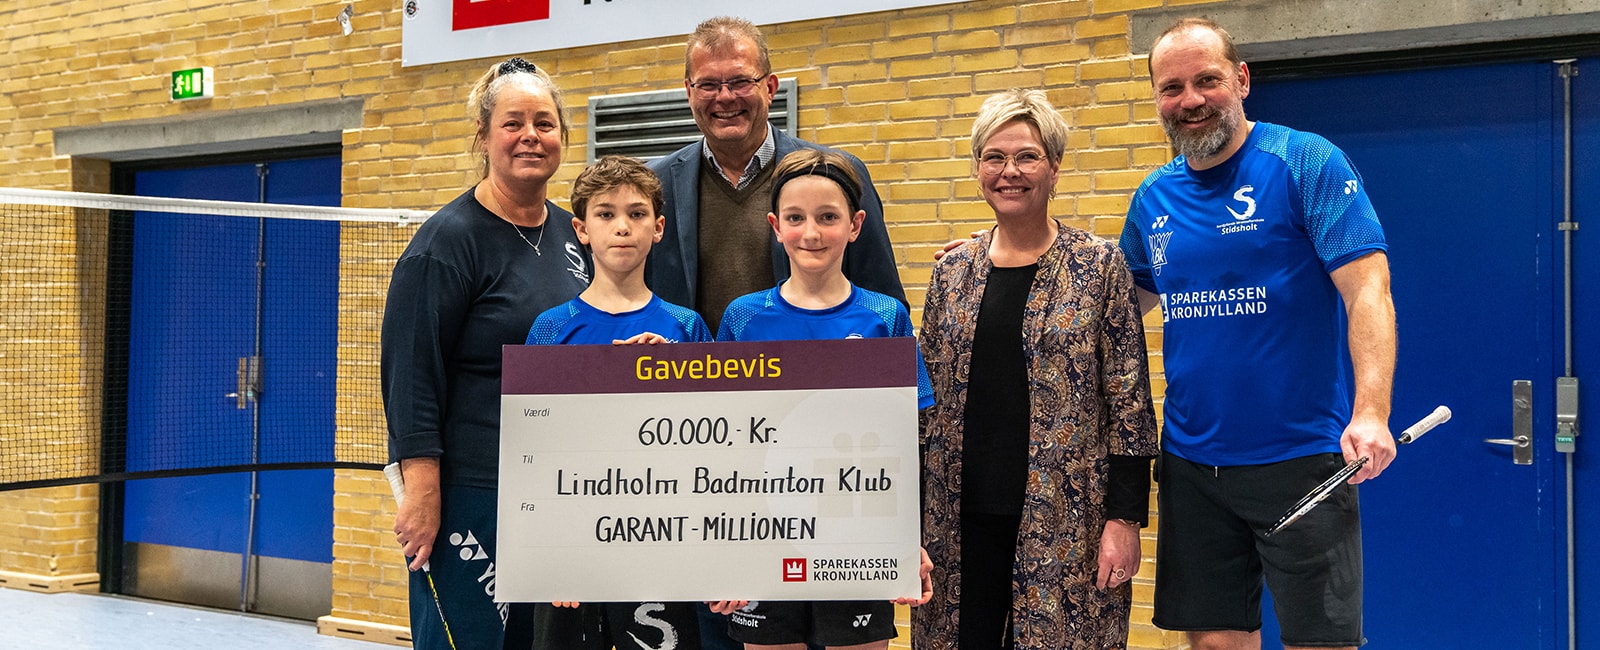 Sparekassen Kronjylland donerer 60.000 kr. til Lindholm Badminton Klub. Med donationen støtter Sparekassen Kronjylland, at klubben kan give frikontingent til de børn og unge, hvis forældre af forskellige årsager ikke har råd til at betale for deres medlemskab. 